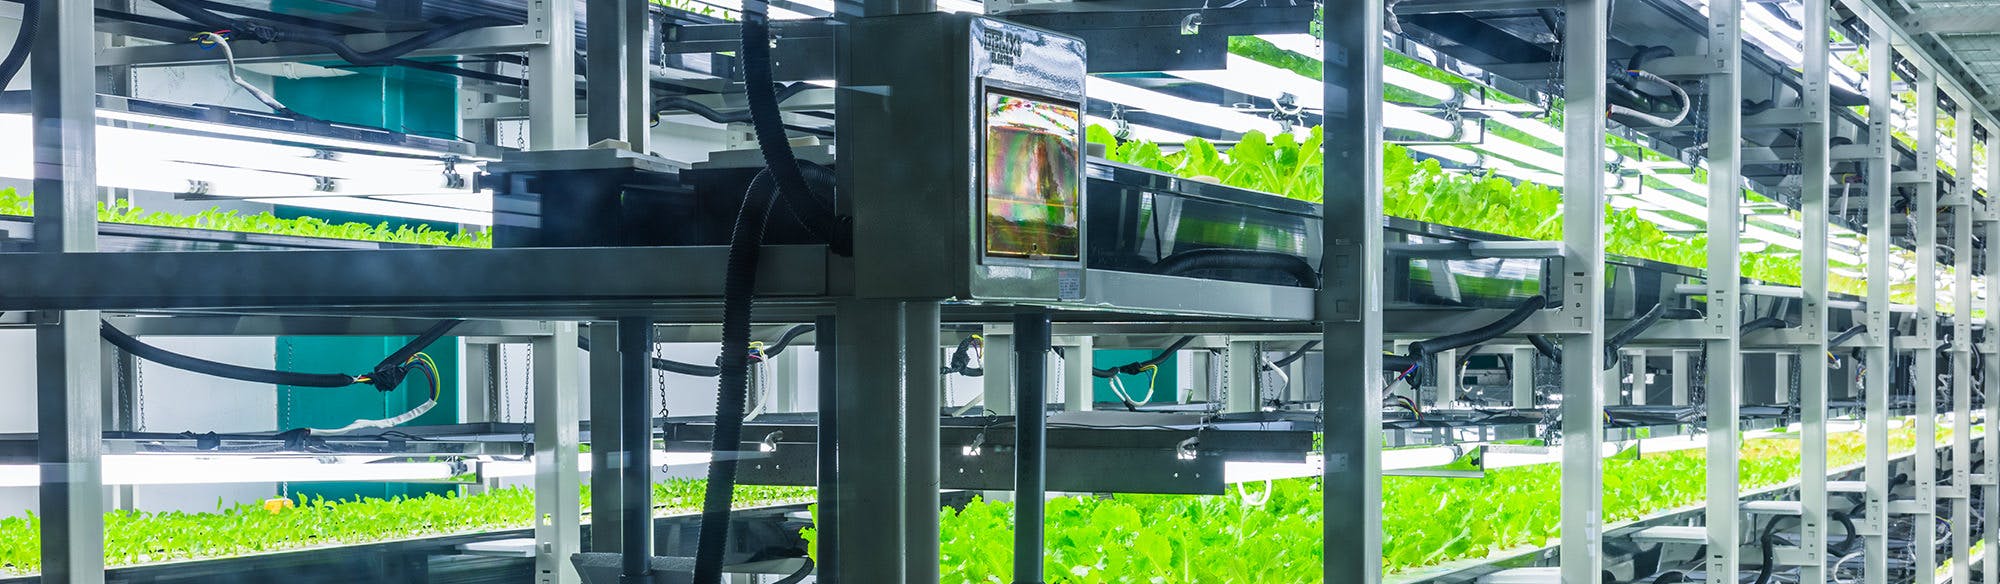 Vertical farm: sostenibilità ed efficienza